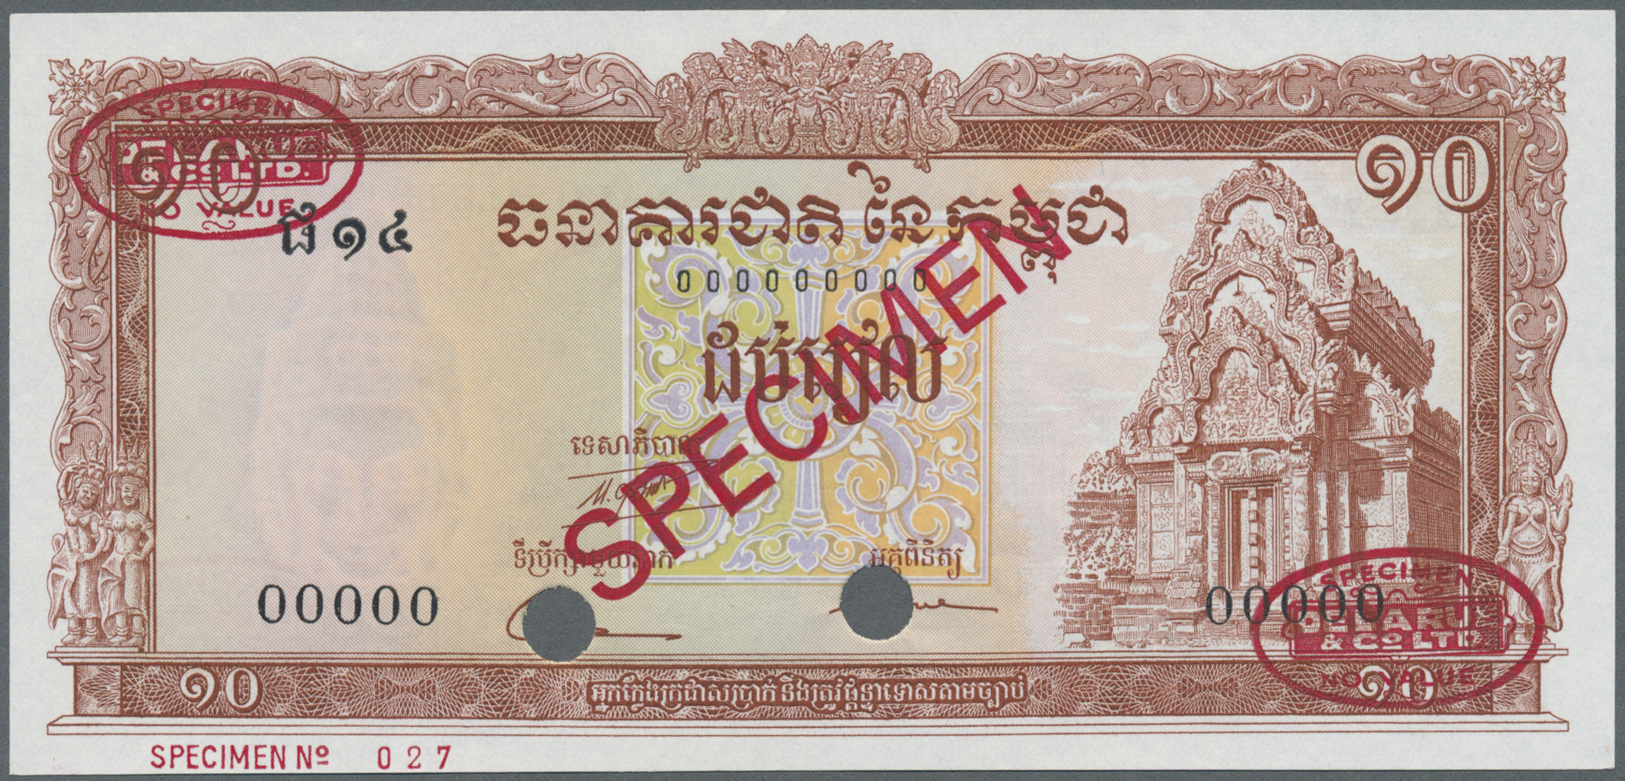 00458 Cambodia / Kambodscha: 10 Riels ND Specimen P. 11cs In Condition: UNC. - Cambodia